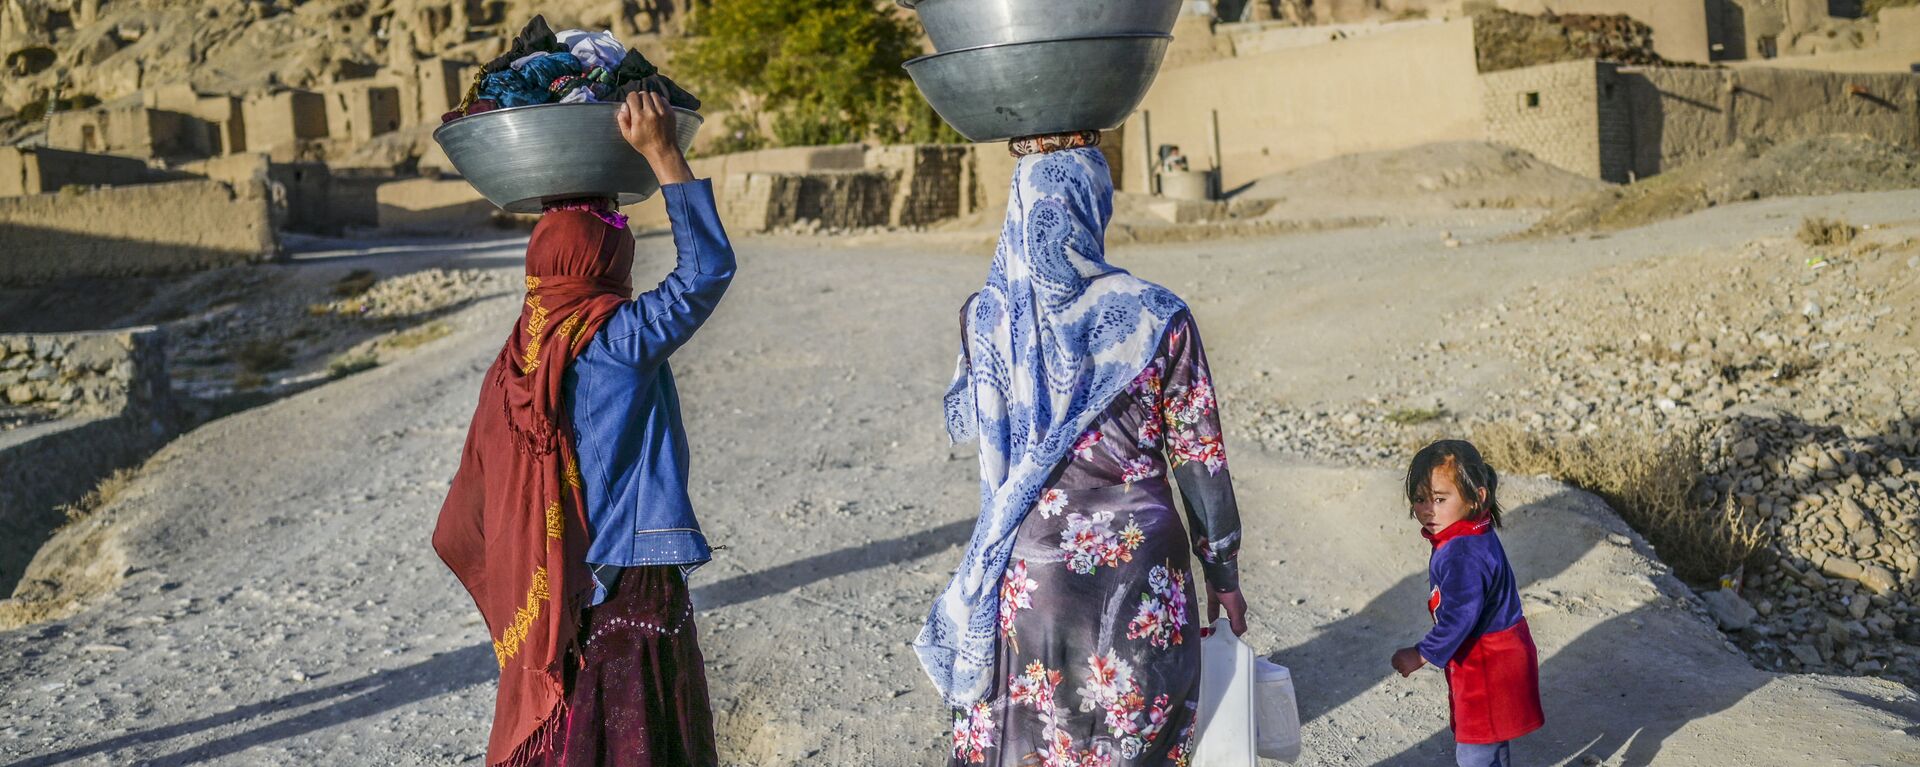 نساء، من عرقية هزارة، يحملن الملابس المغسولة يتوجهن إلى منازلهن في قرية بالقرب من جرف صخري في باميان، أفغانستان 3 أكتوبر2021 - سبوتنيك عربي, 1920, 05.10.2021